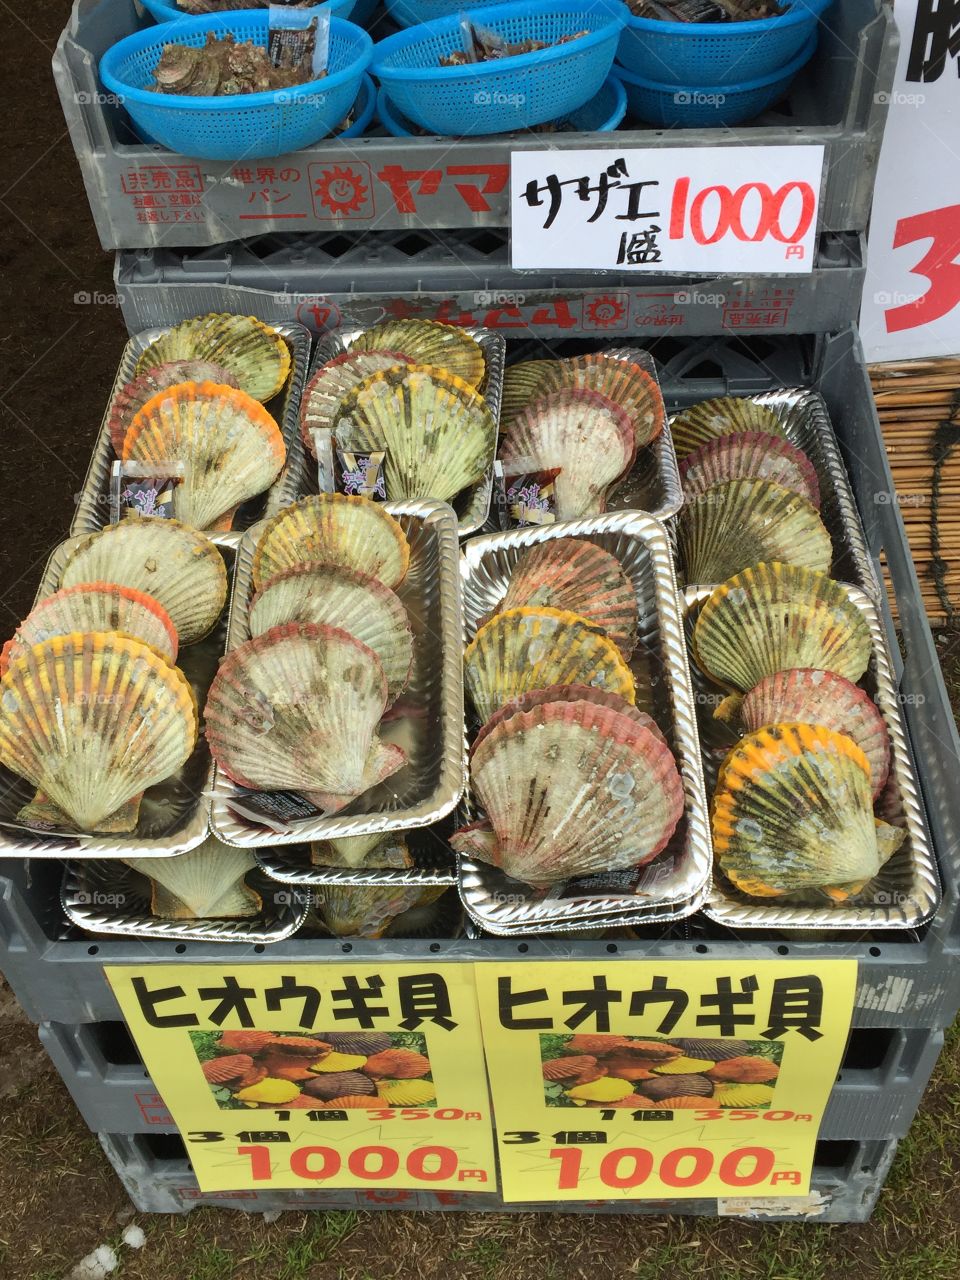 Shellfish at a Japanese market